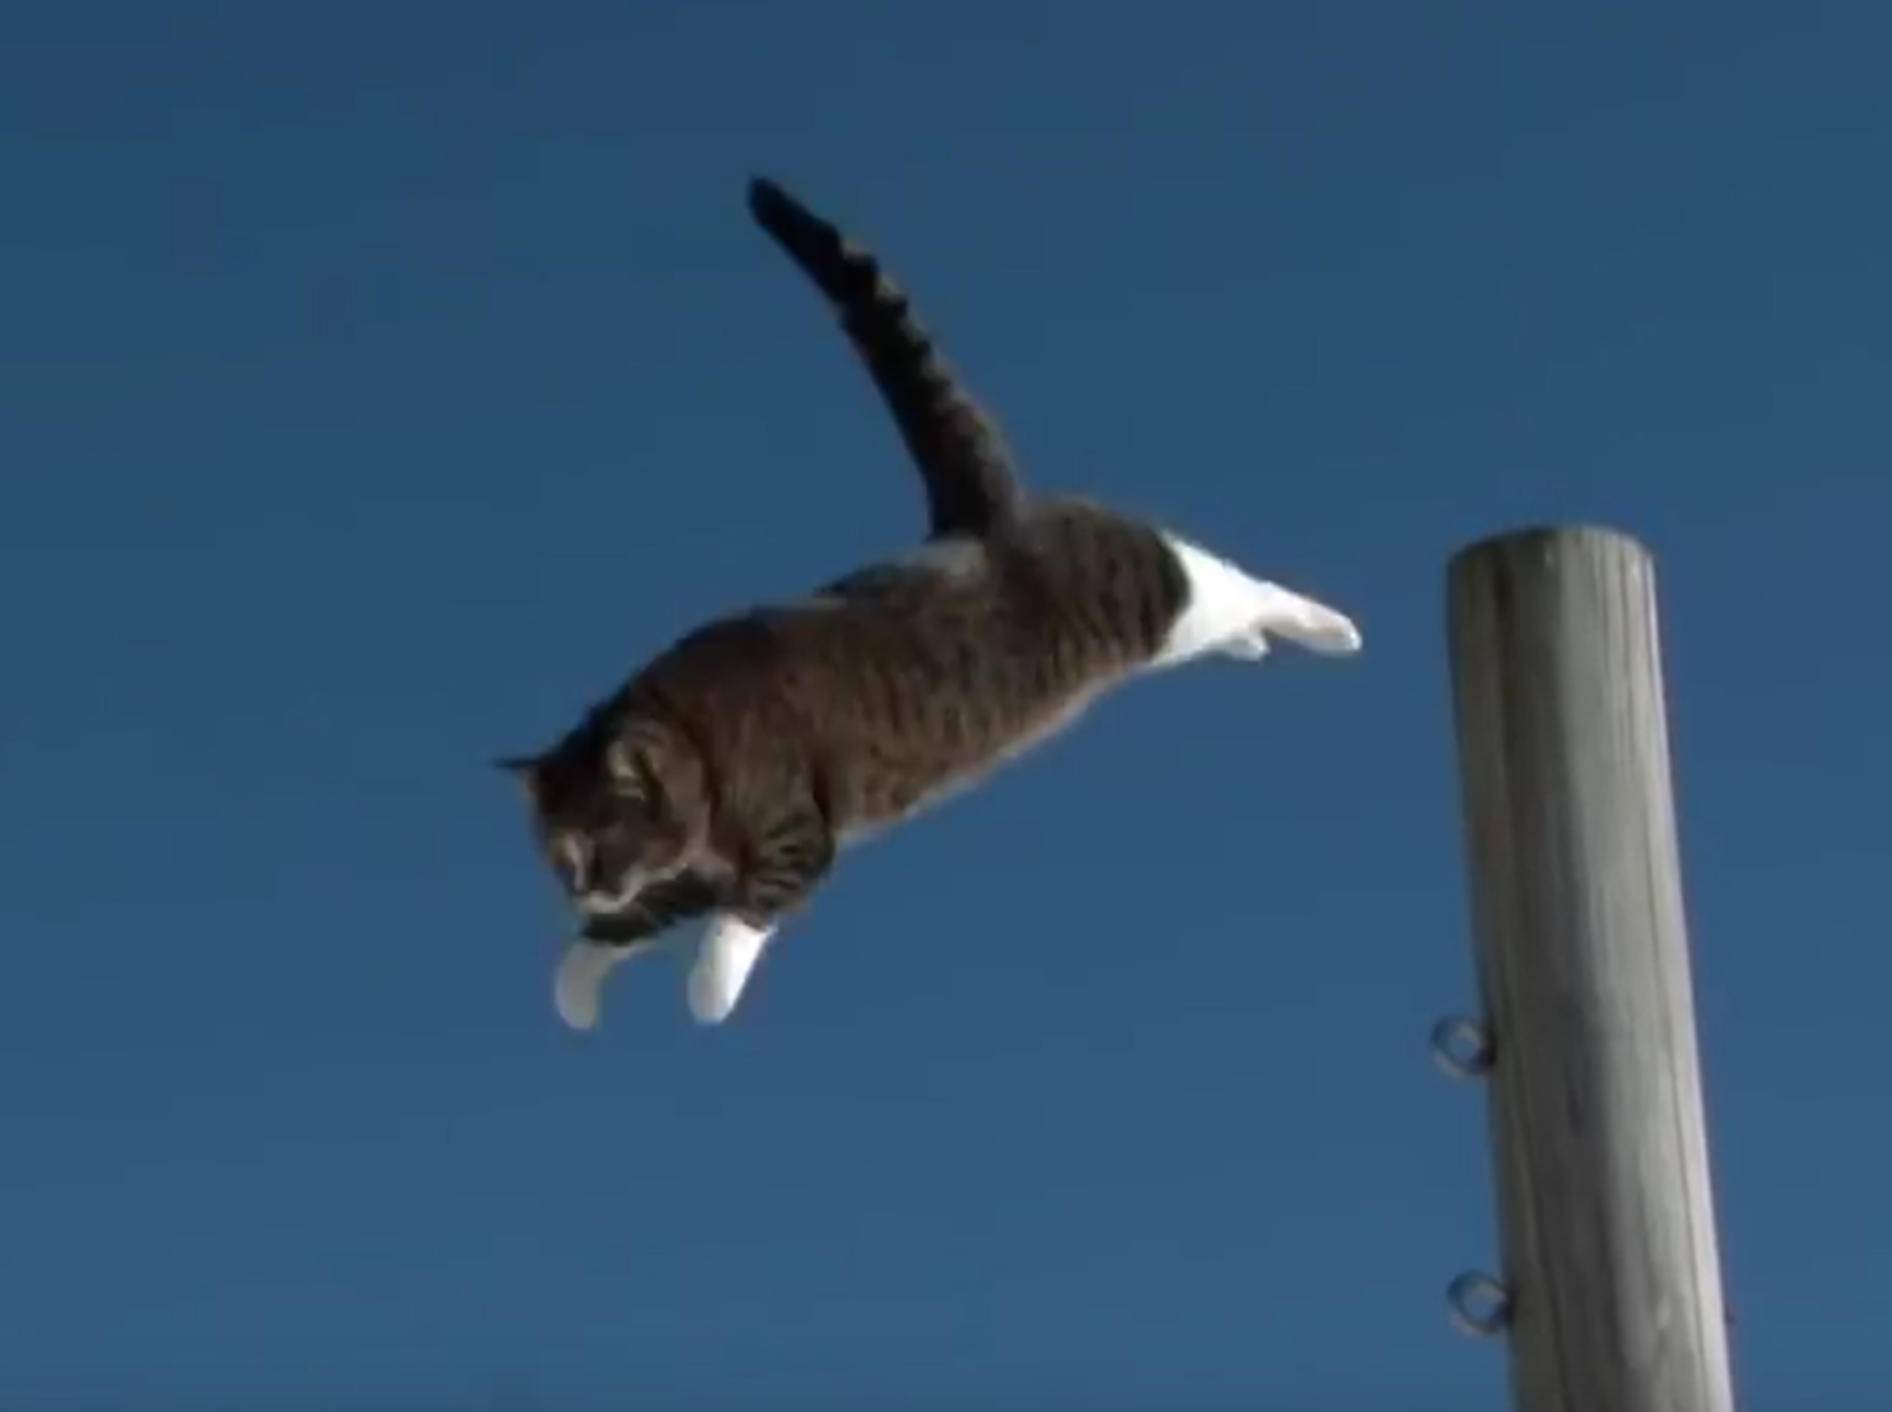 Katze Didga ist ein richtiger Parkour-Profi! – YouTube / CATMANTOO